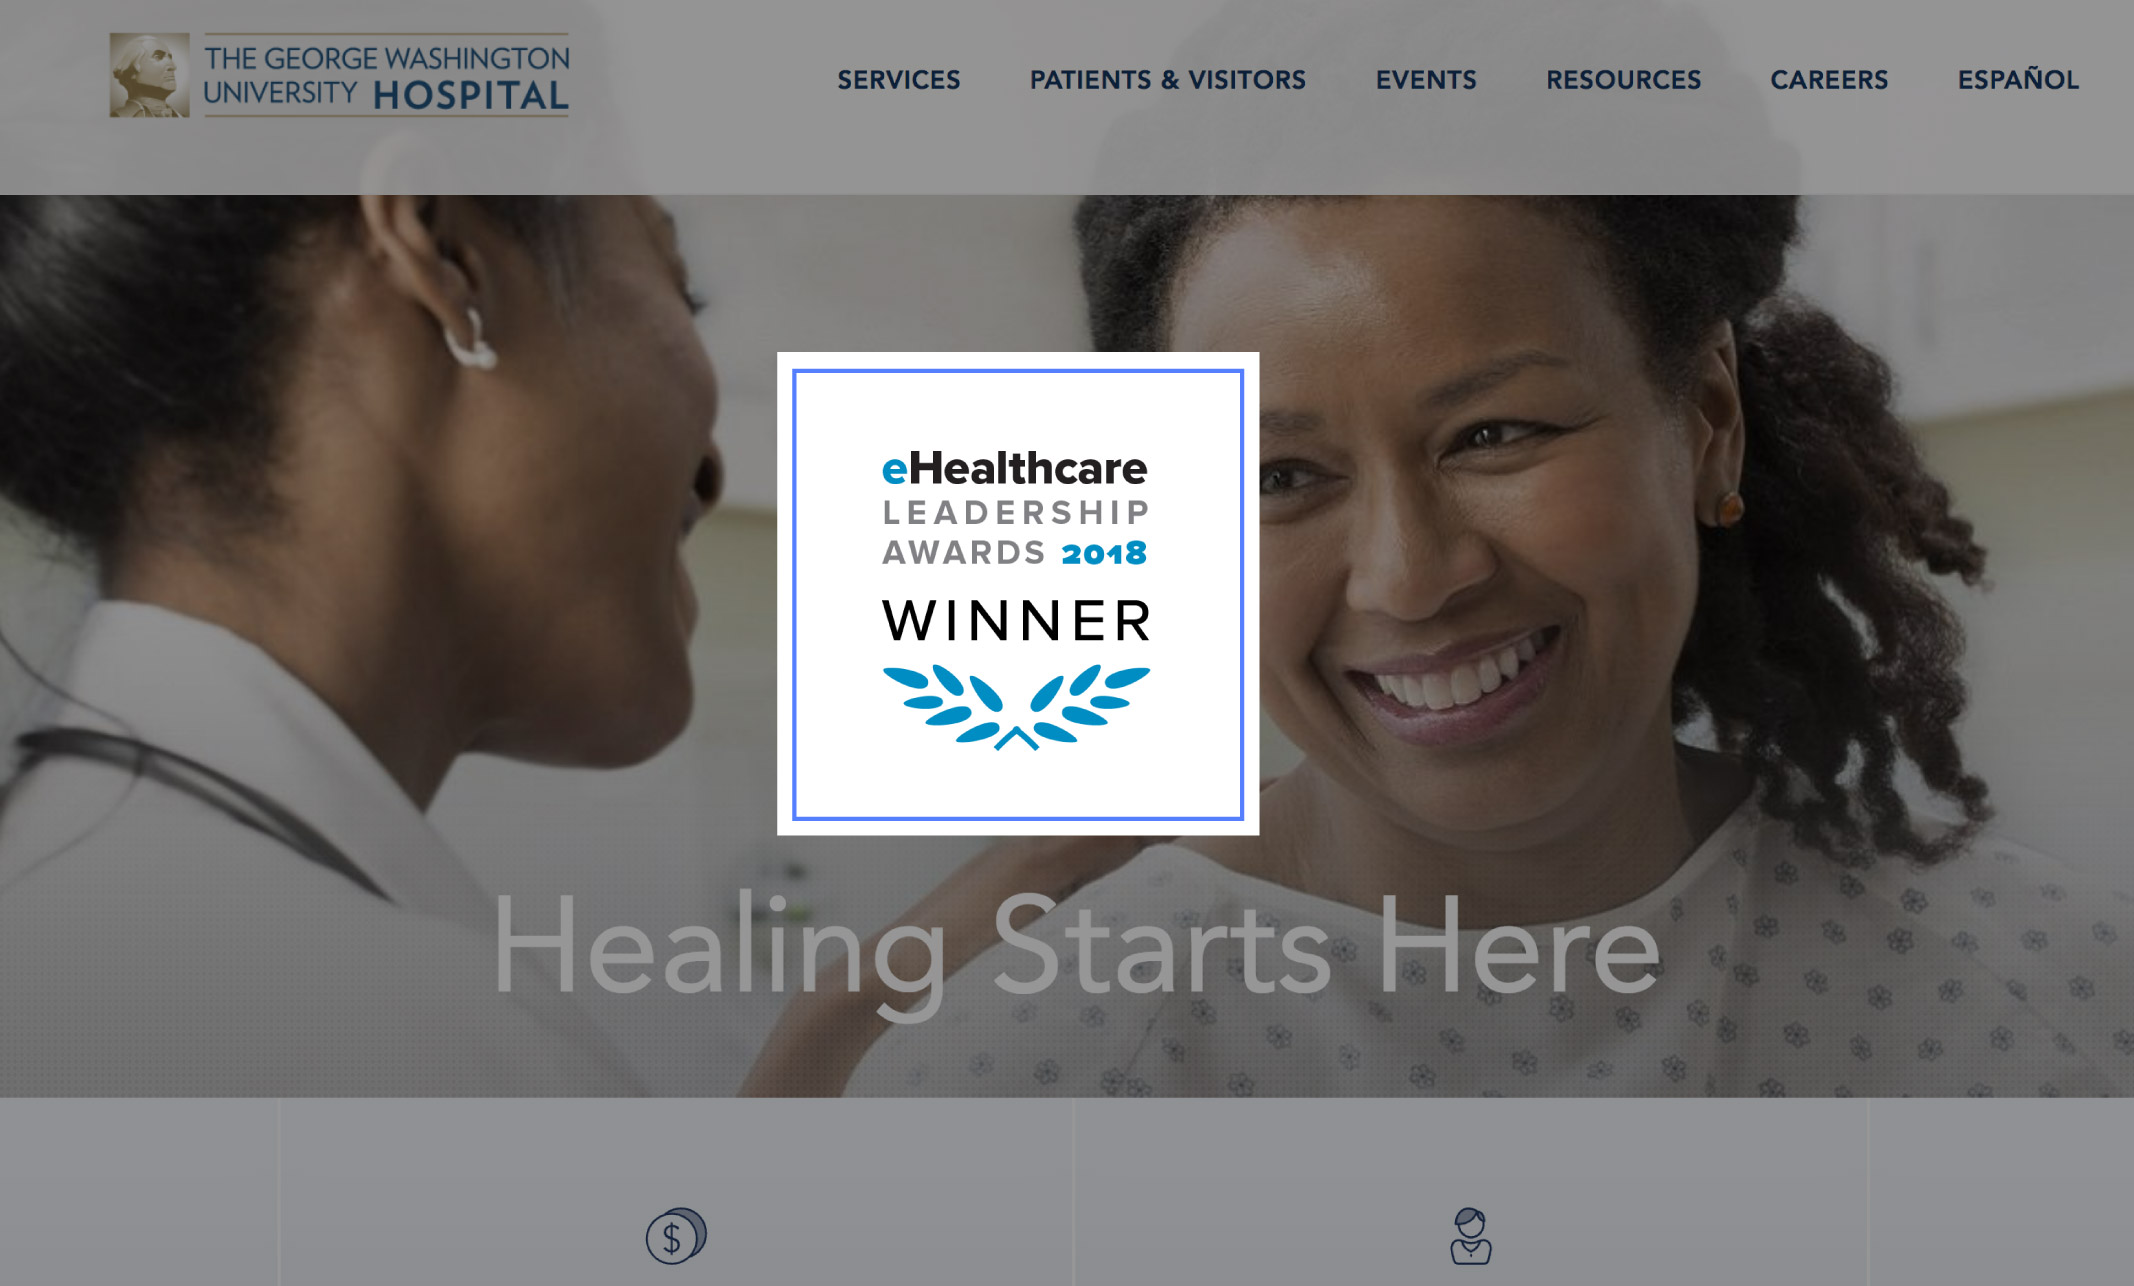 eHealthcare Leadership Award Winner logo overlaid on George Washington Hospital website interface